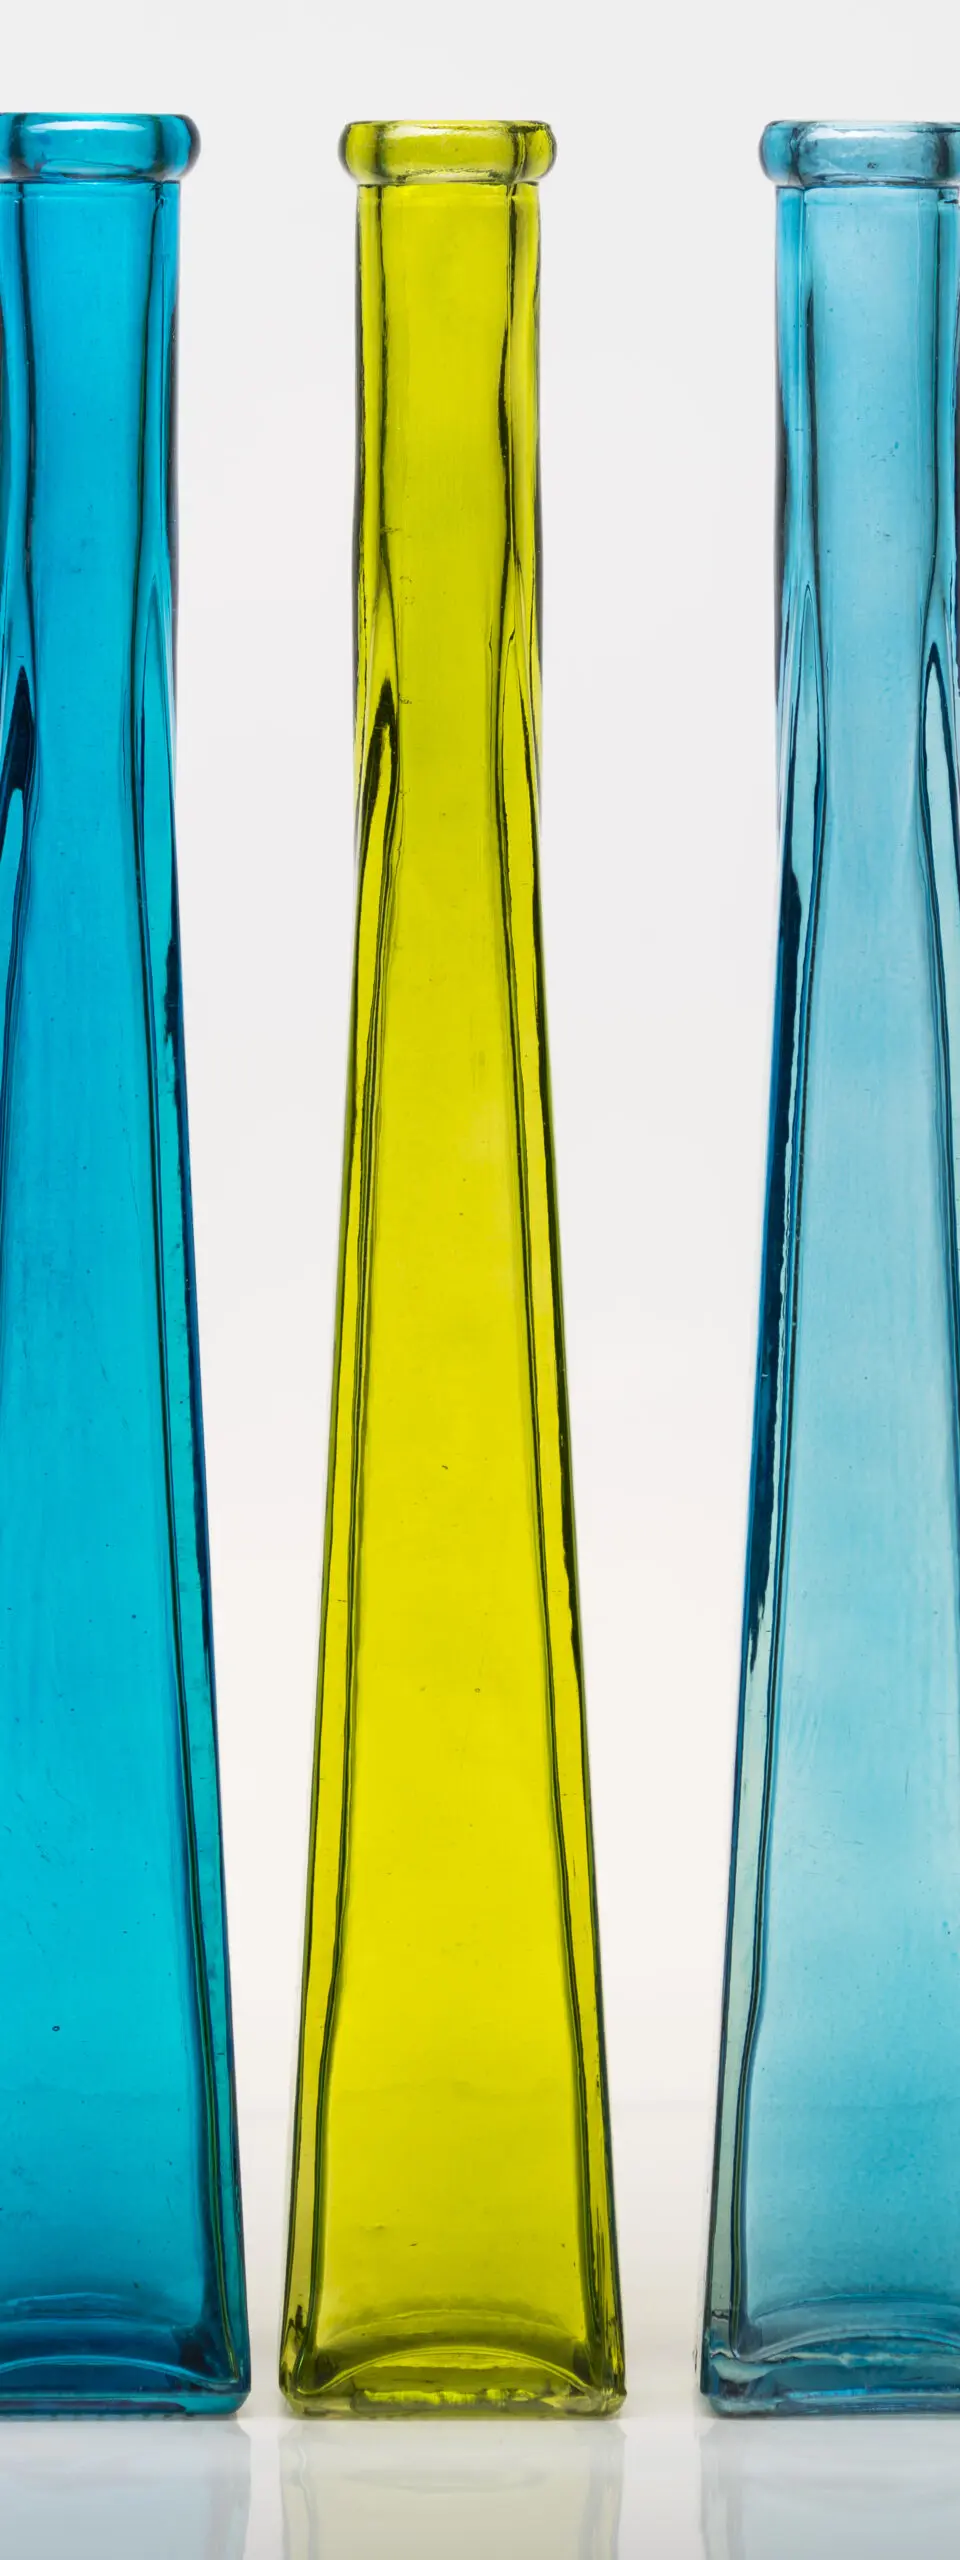 Wandbild (2190) Glass Towers präsentiert: Details und Strukturen,Sonstige Naturdetails